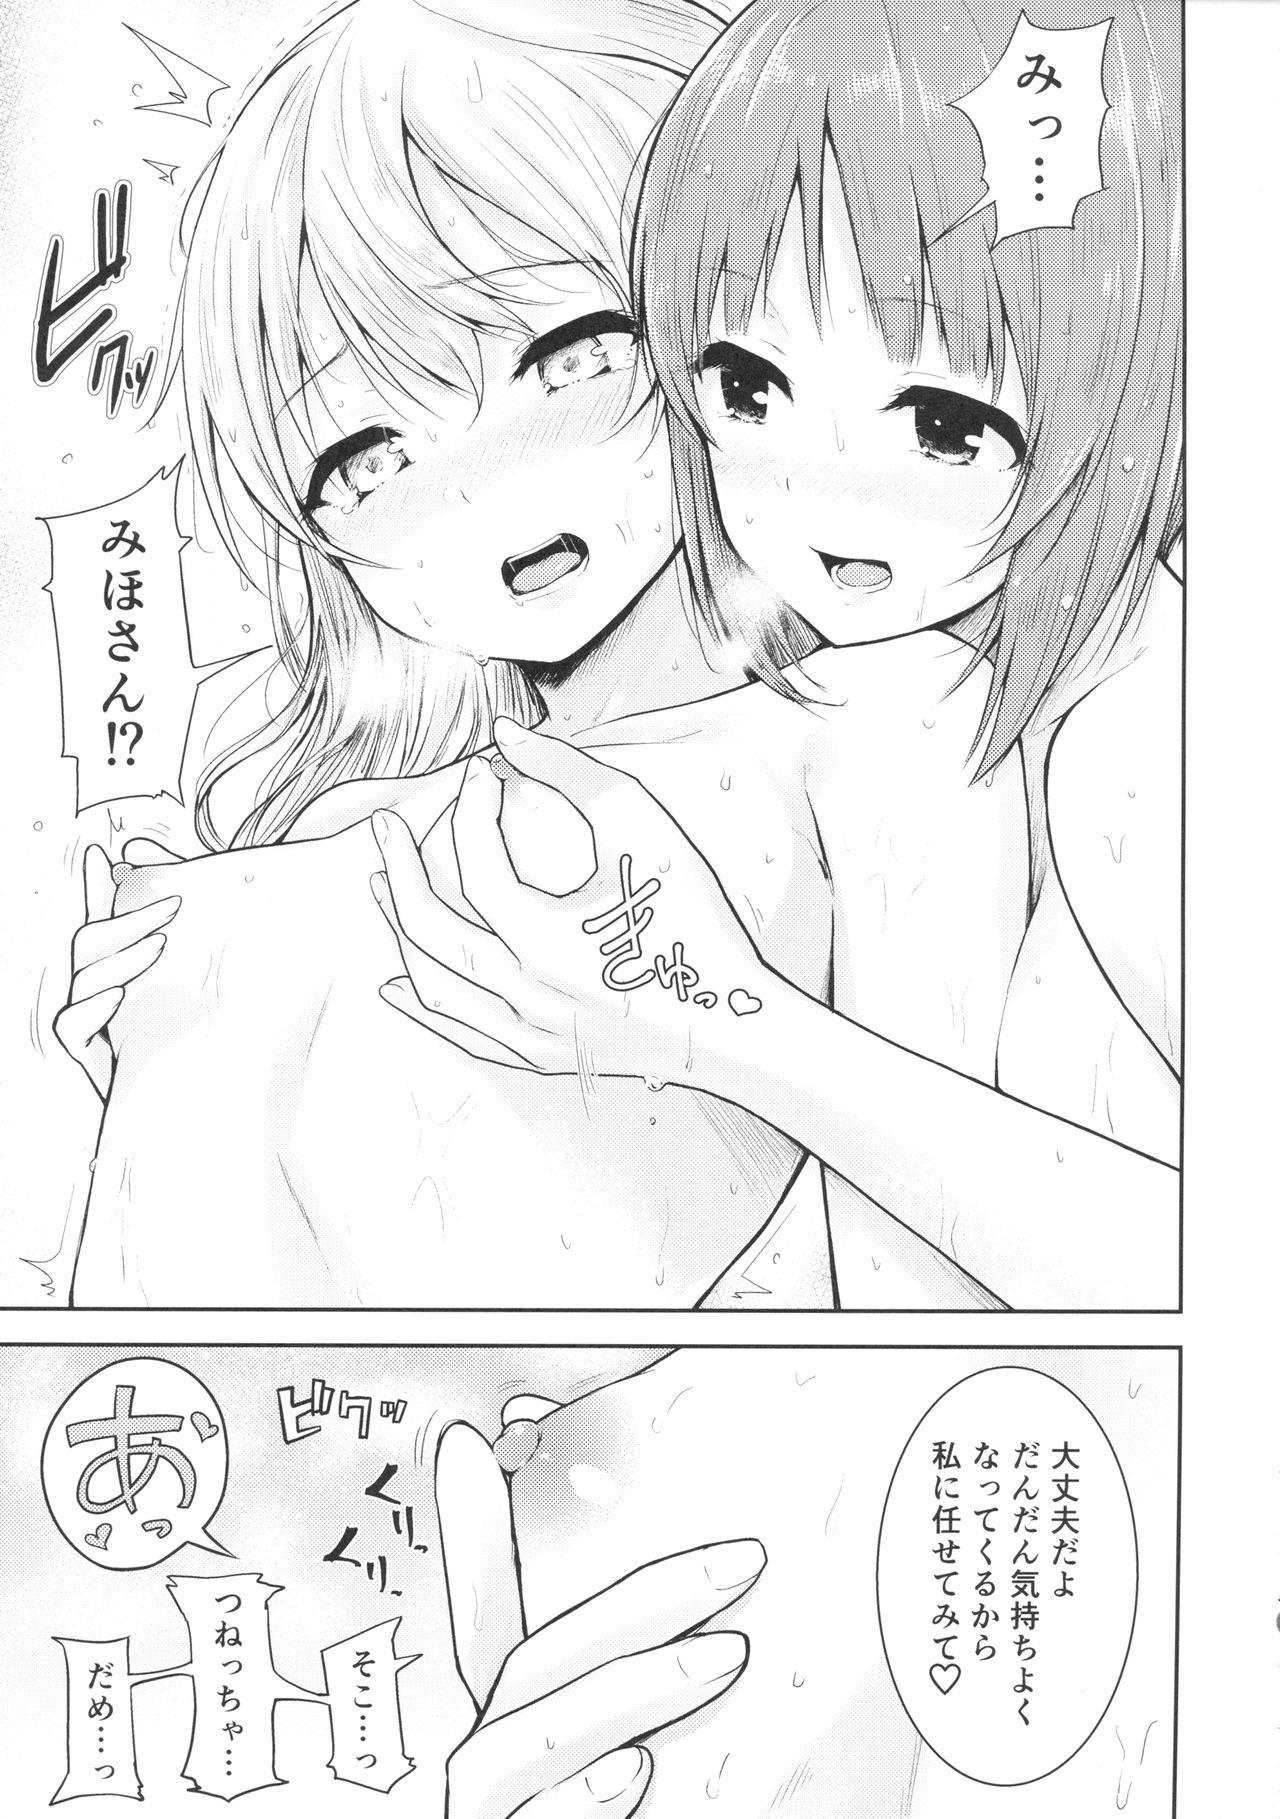 Analfucking (C94) [amefurasy (harino646)] Shimada-ryuu Bokoniedou -1- (Girls und Panzer) - Girls und panzer Sapphic - Page 10